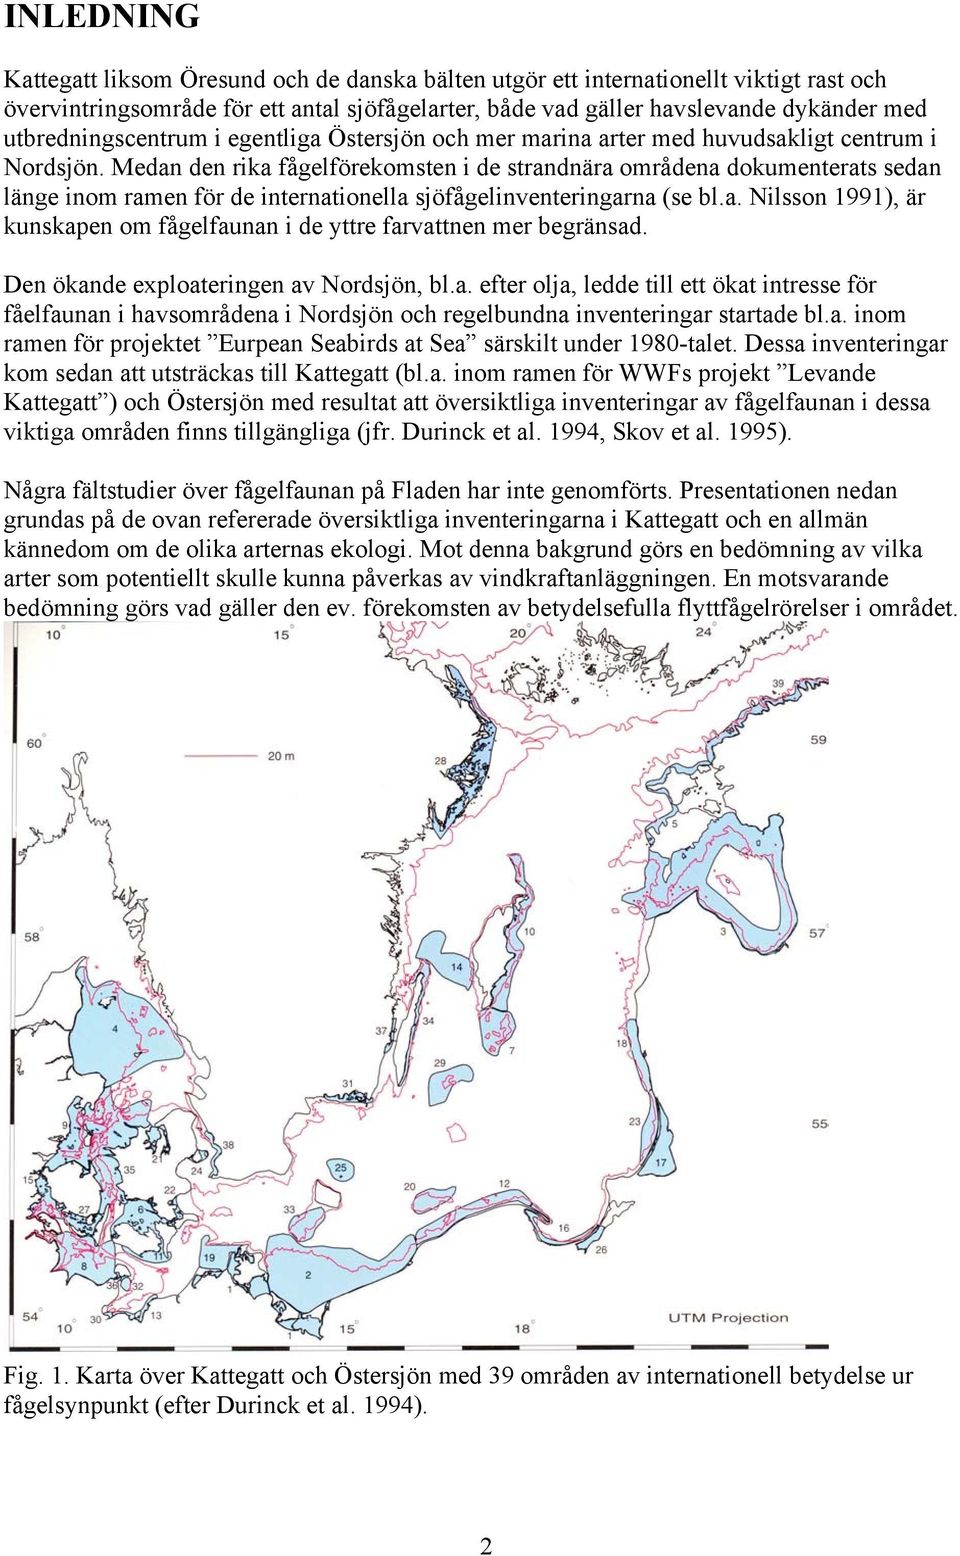 Medan den rika fågelförekomsten i de strandnära områdena dokumenterats sedan länge inom ramen för de internationella sjöfågelinventeringarna (se bl.a. Nilsson 1991), är kunskapen om fågelfaunan i de yttre farvattnen mer begränsad.